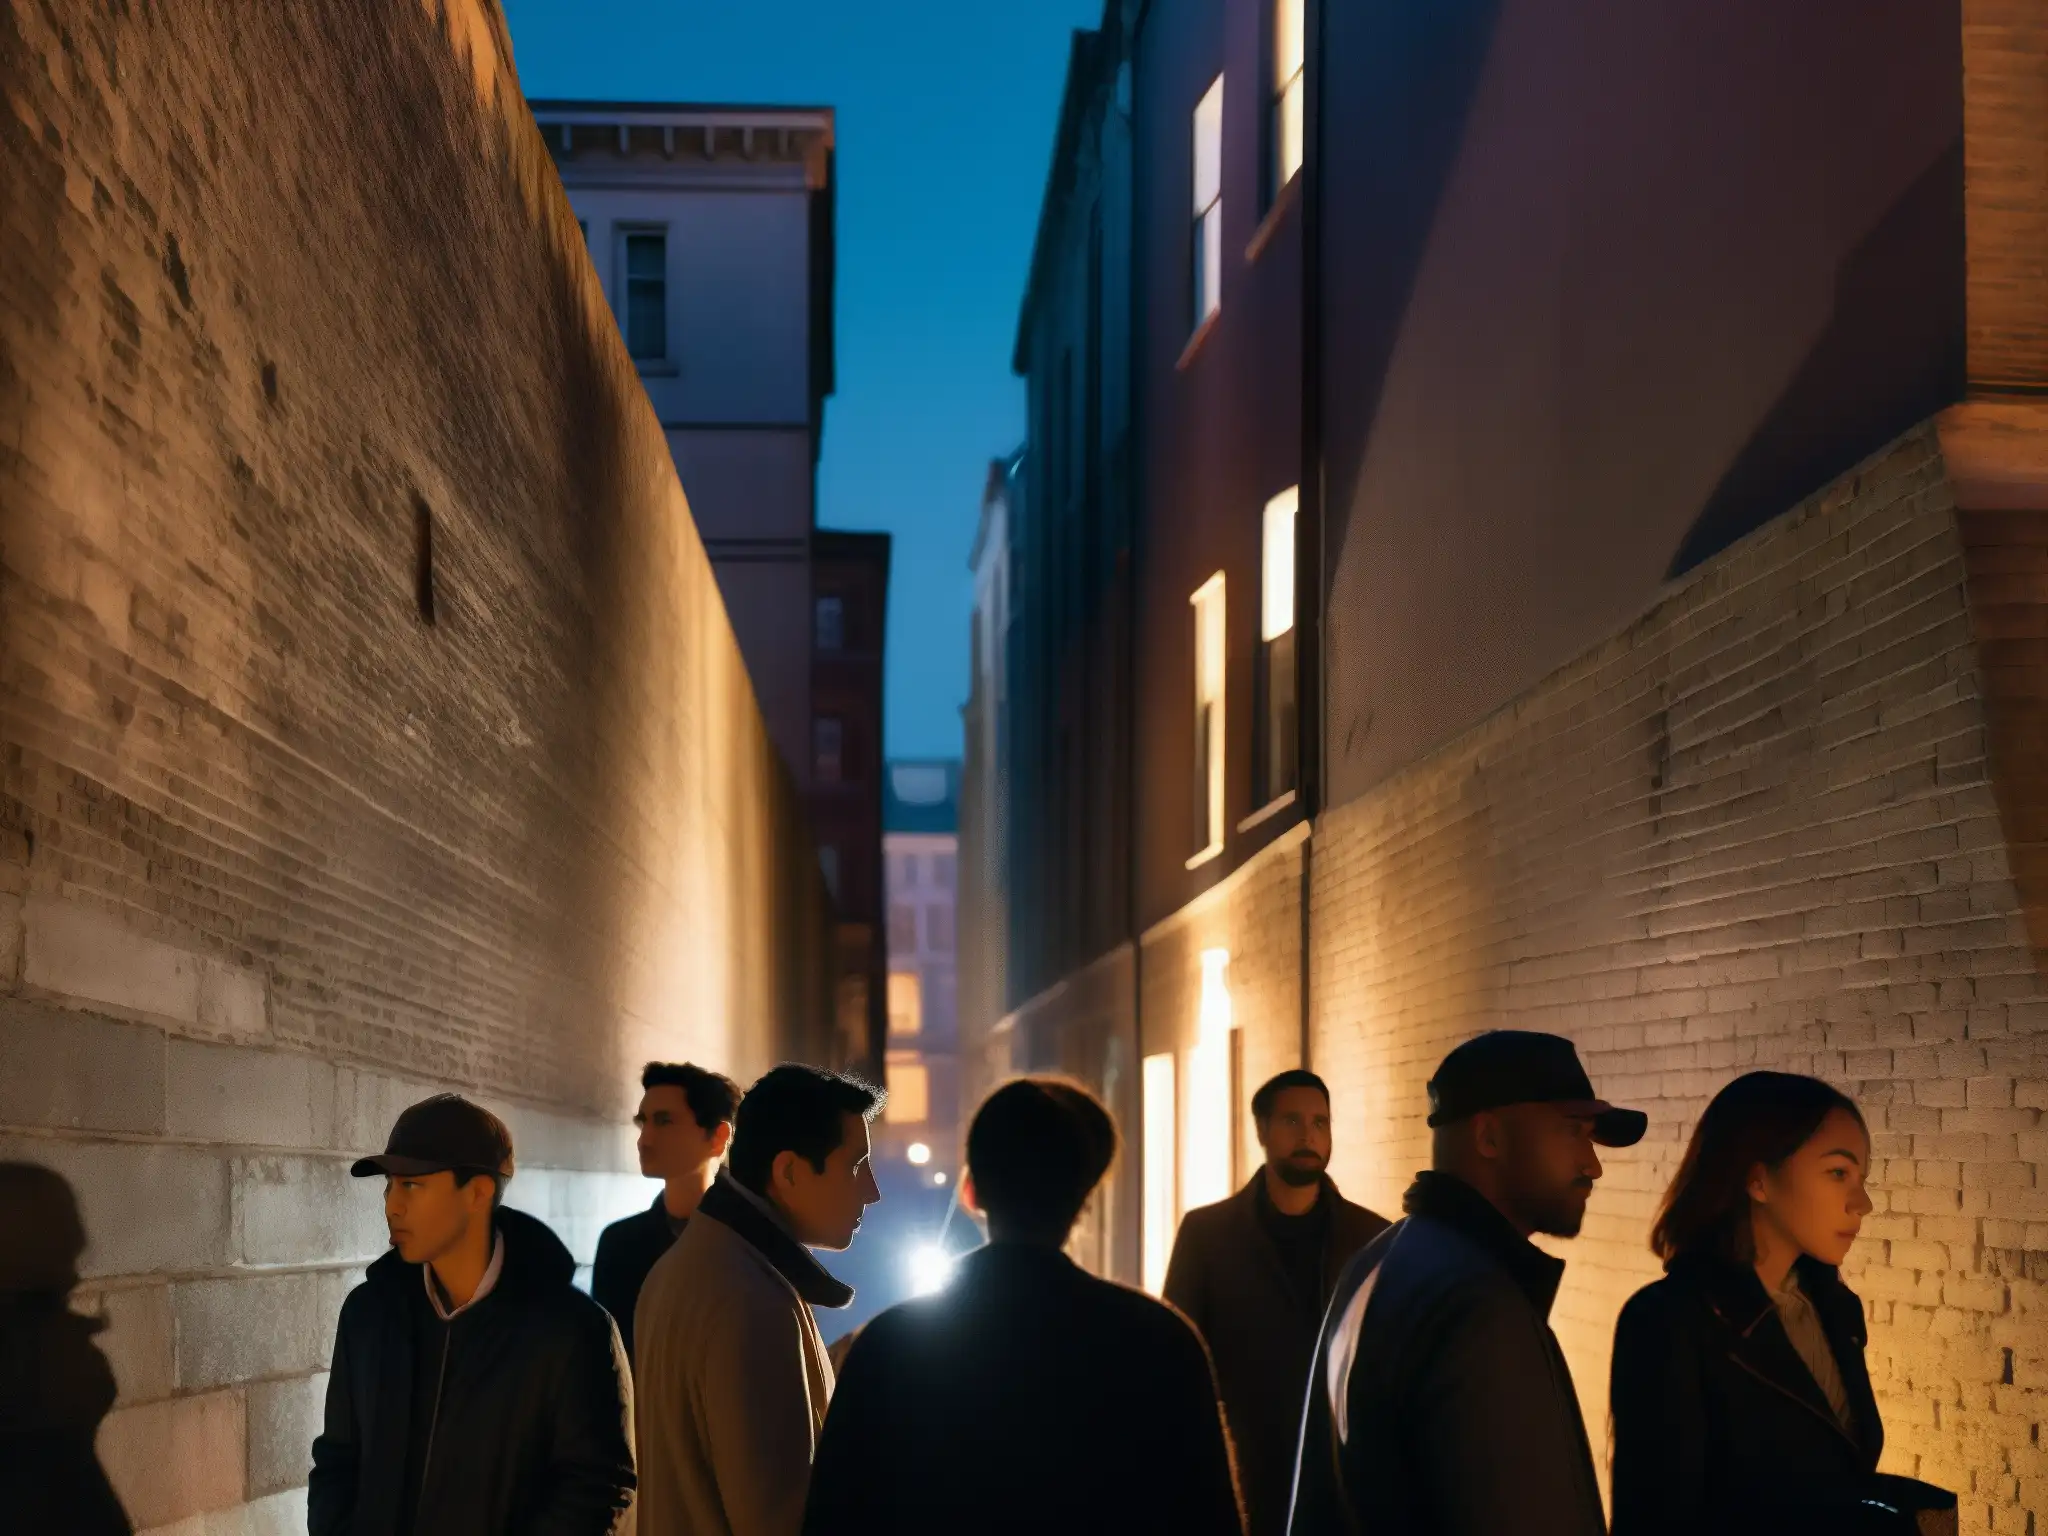 Un grupo de personas en una calle oscura llena de misterio, susurran entre sí, mientras una figura en la distancia añade a la inquietud